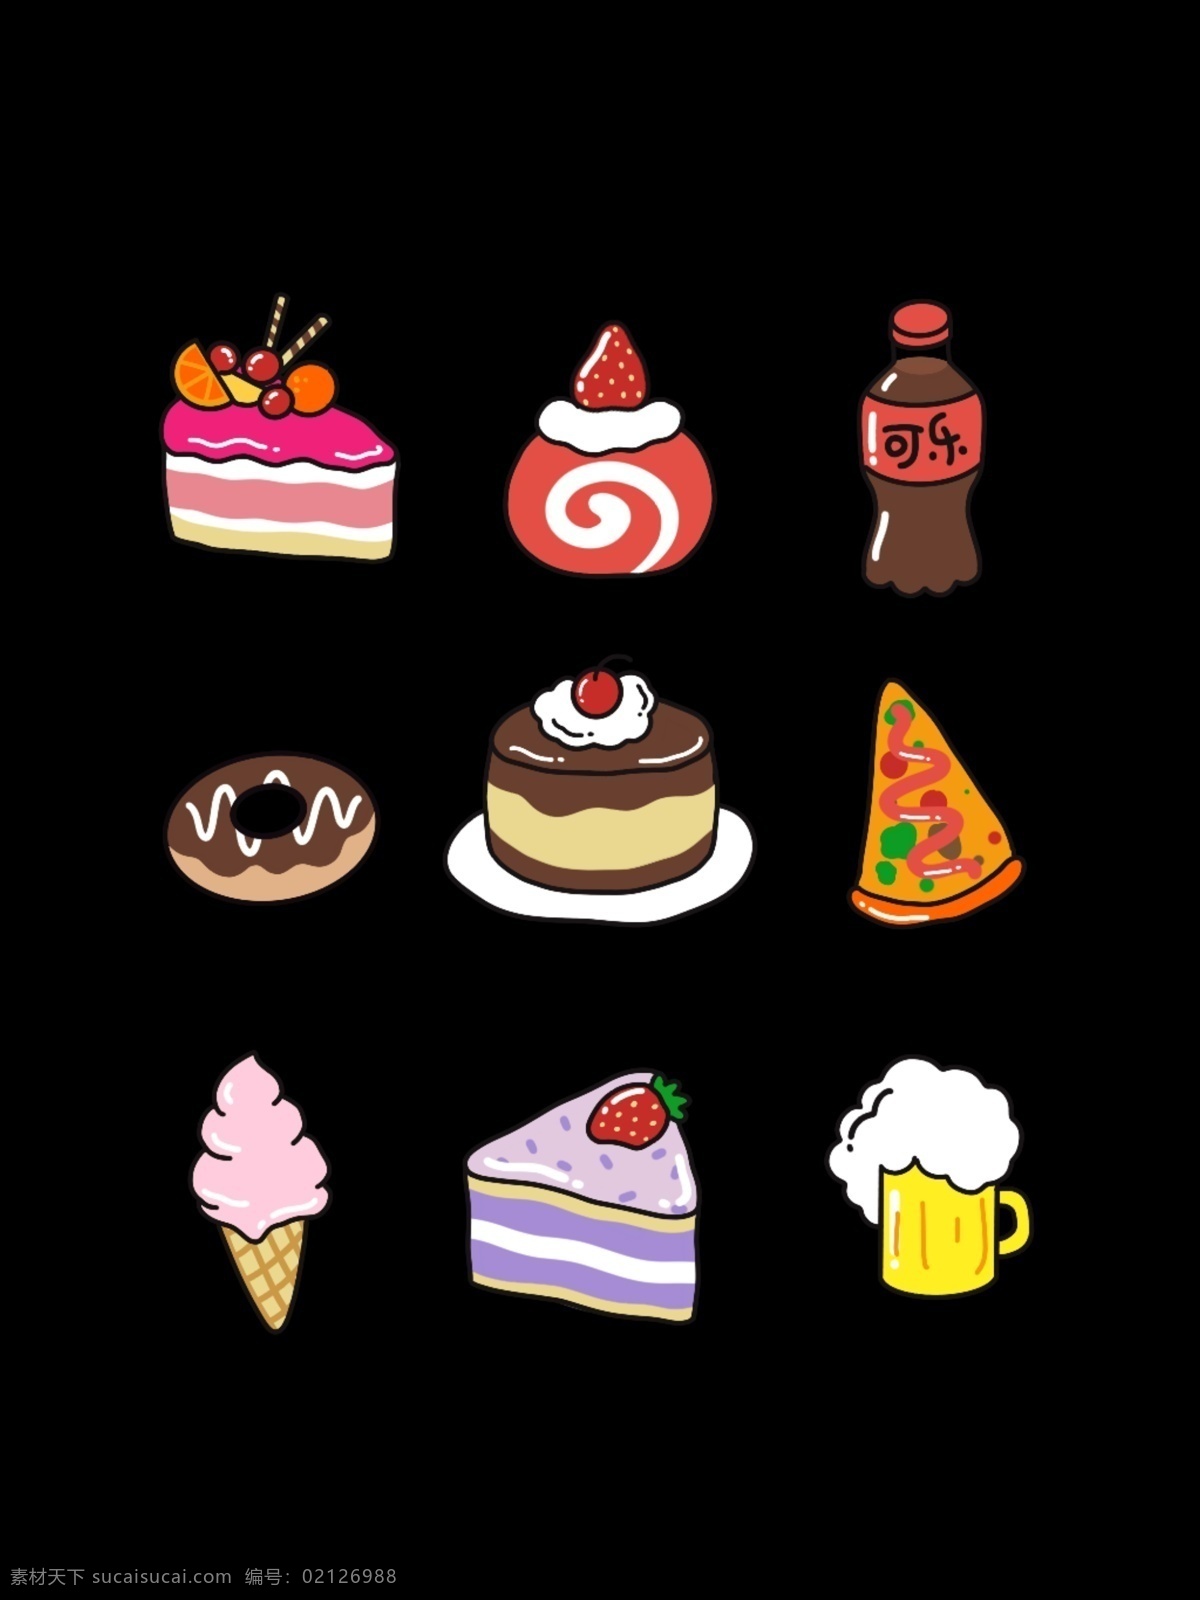 可爱 卡通 食物 系列 图标 pizza 冰淇淋 吃货 蛋糕 聚会 卡通手绘 卡通图标 可乐 插画 手绘 底纹边框 其他素材